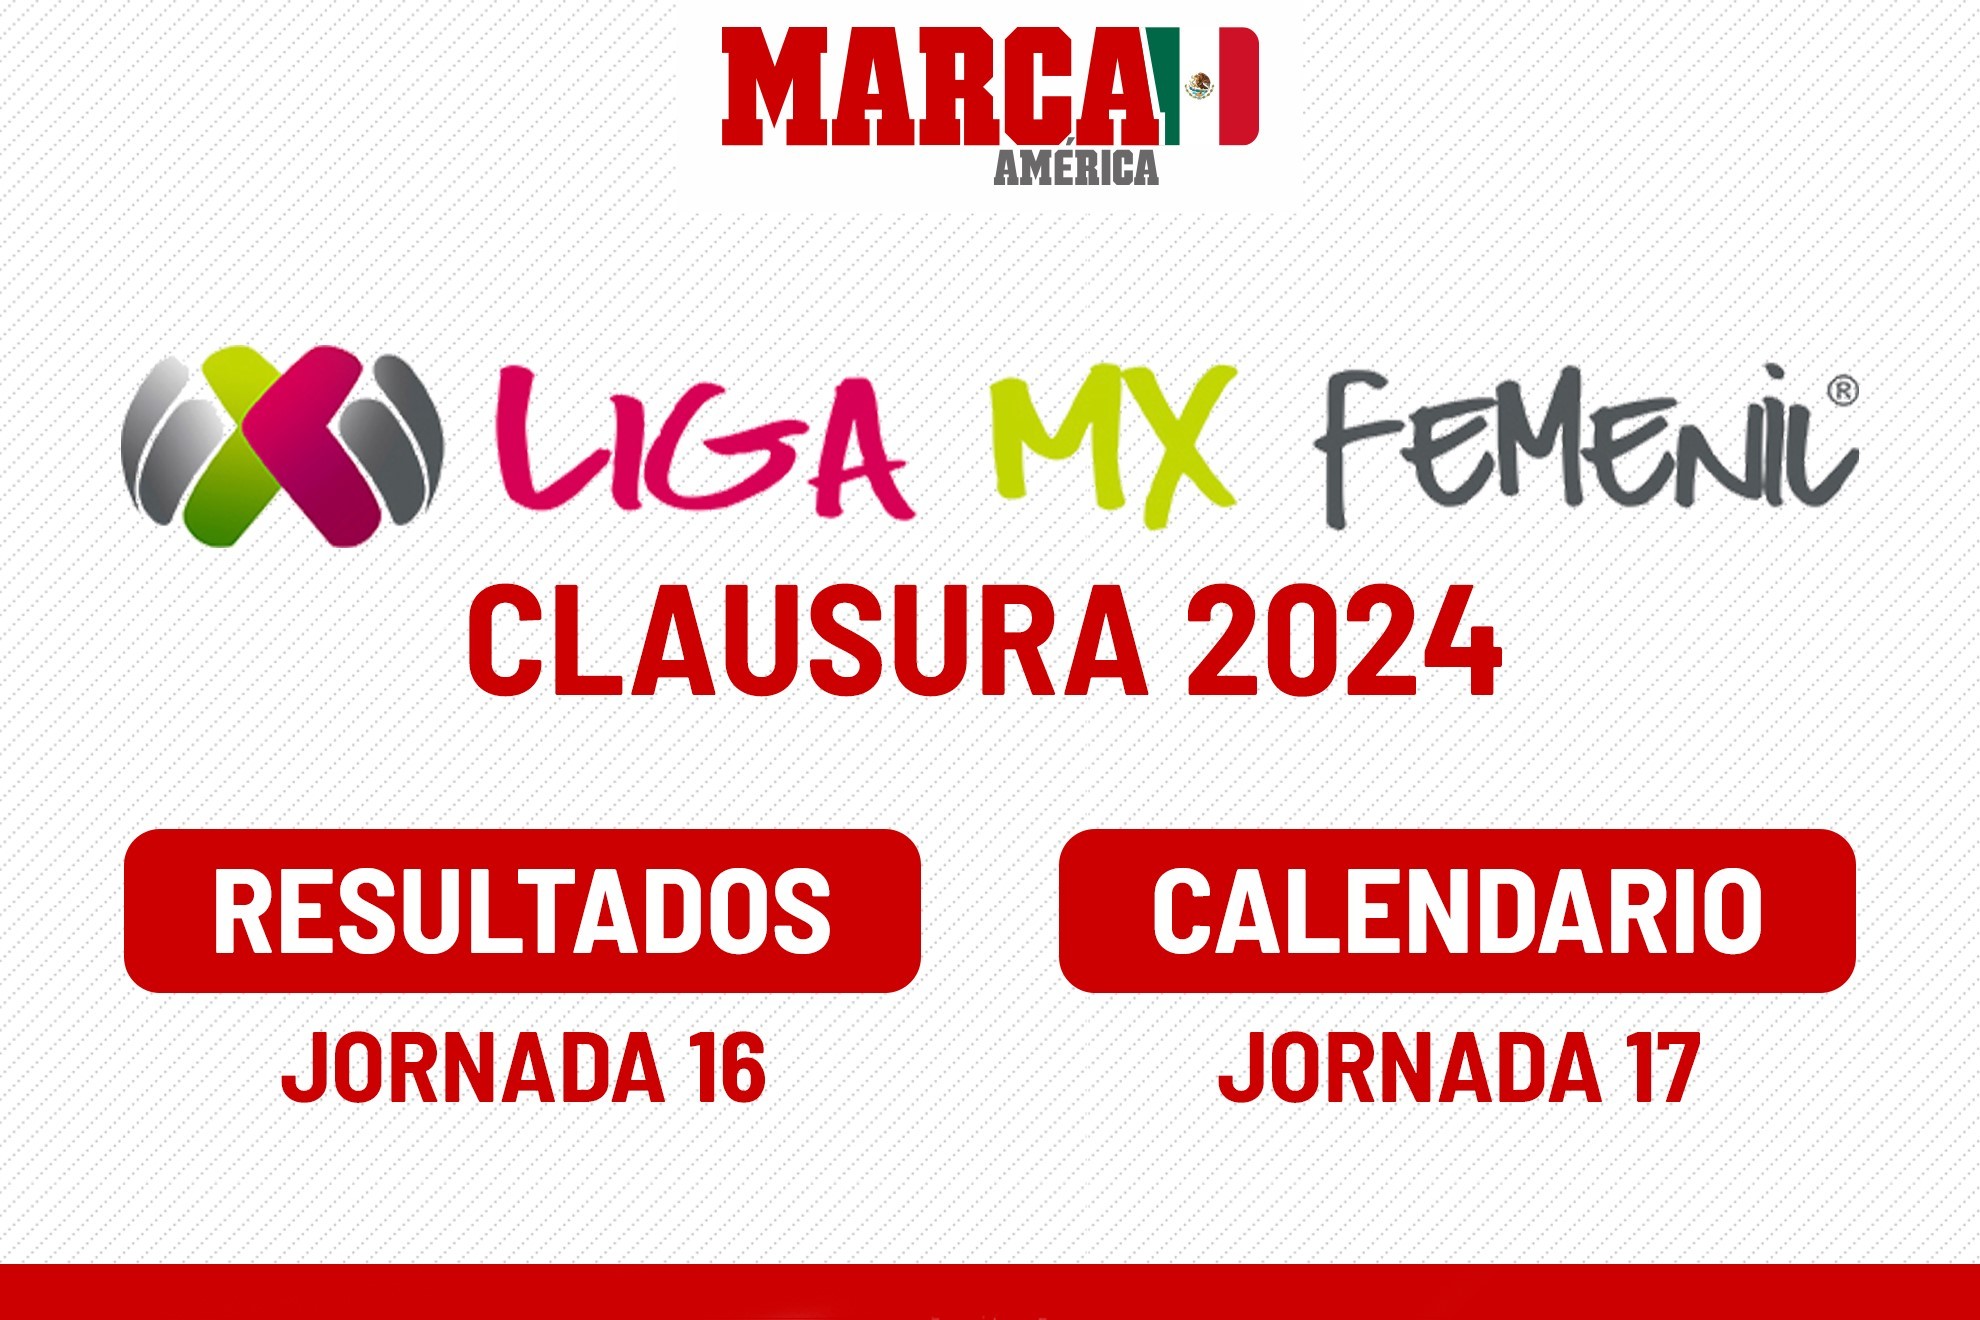 Tabla general Liga MX Femenil 2024: resultados J16, tabla de goleo y calendario partidos Fecha 17